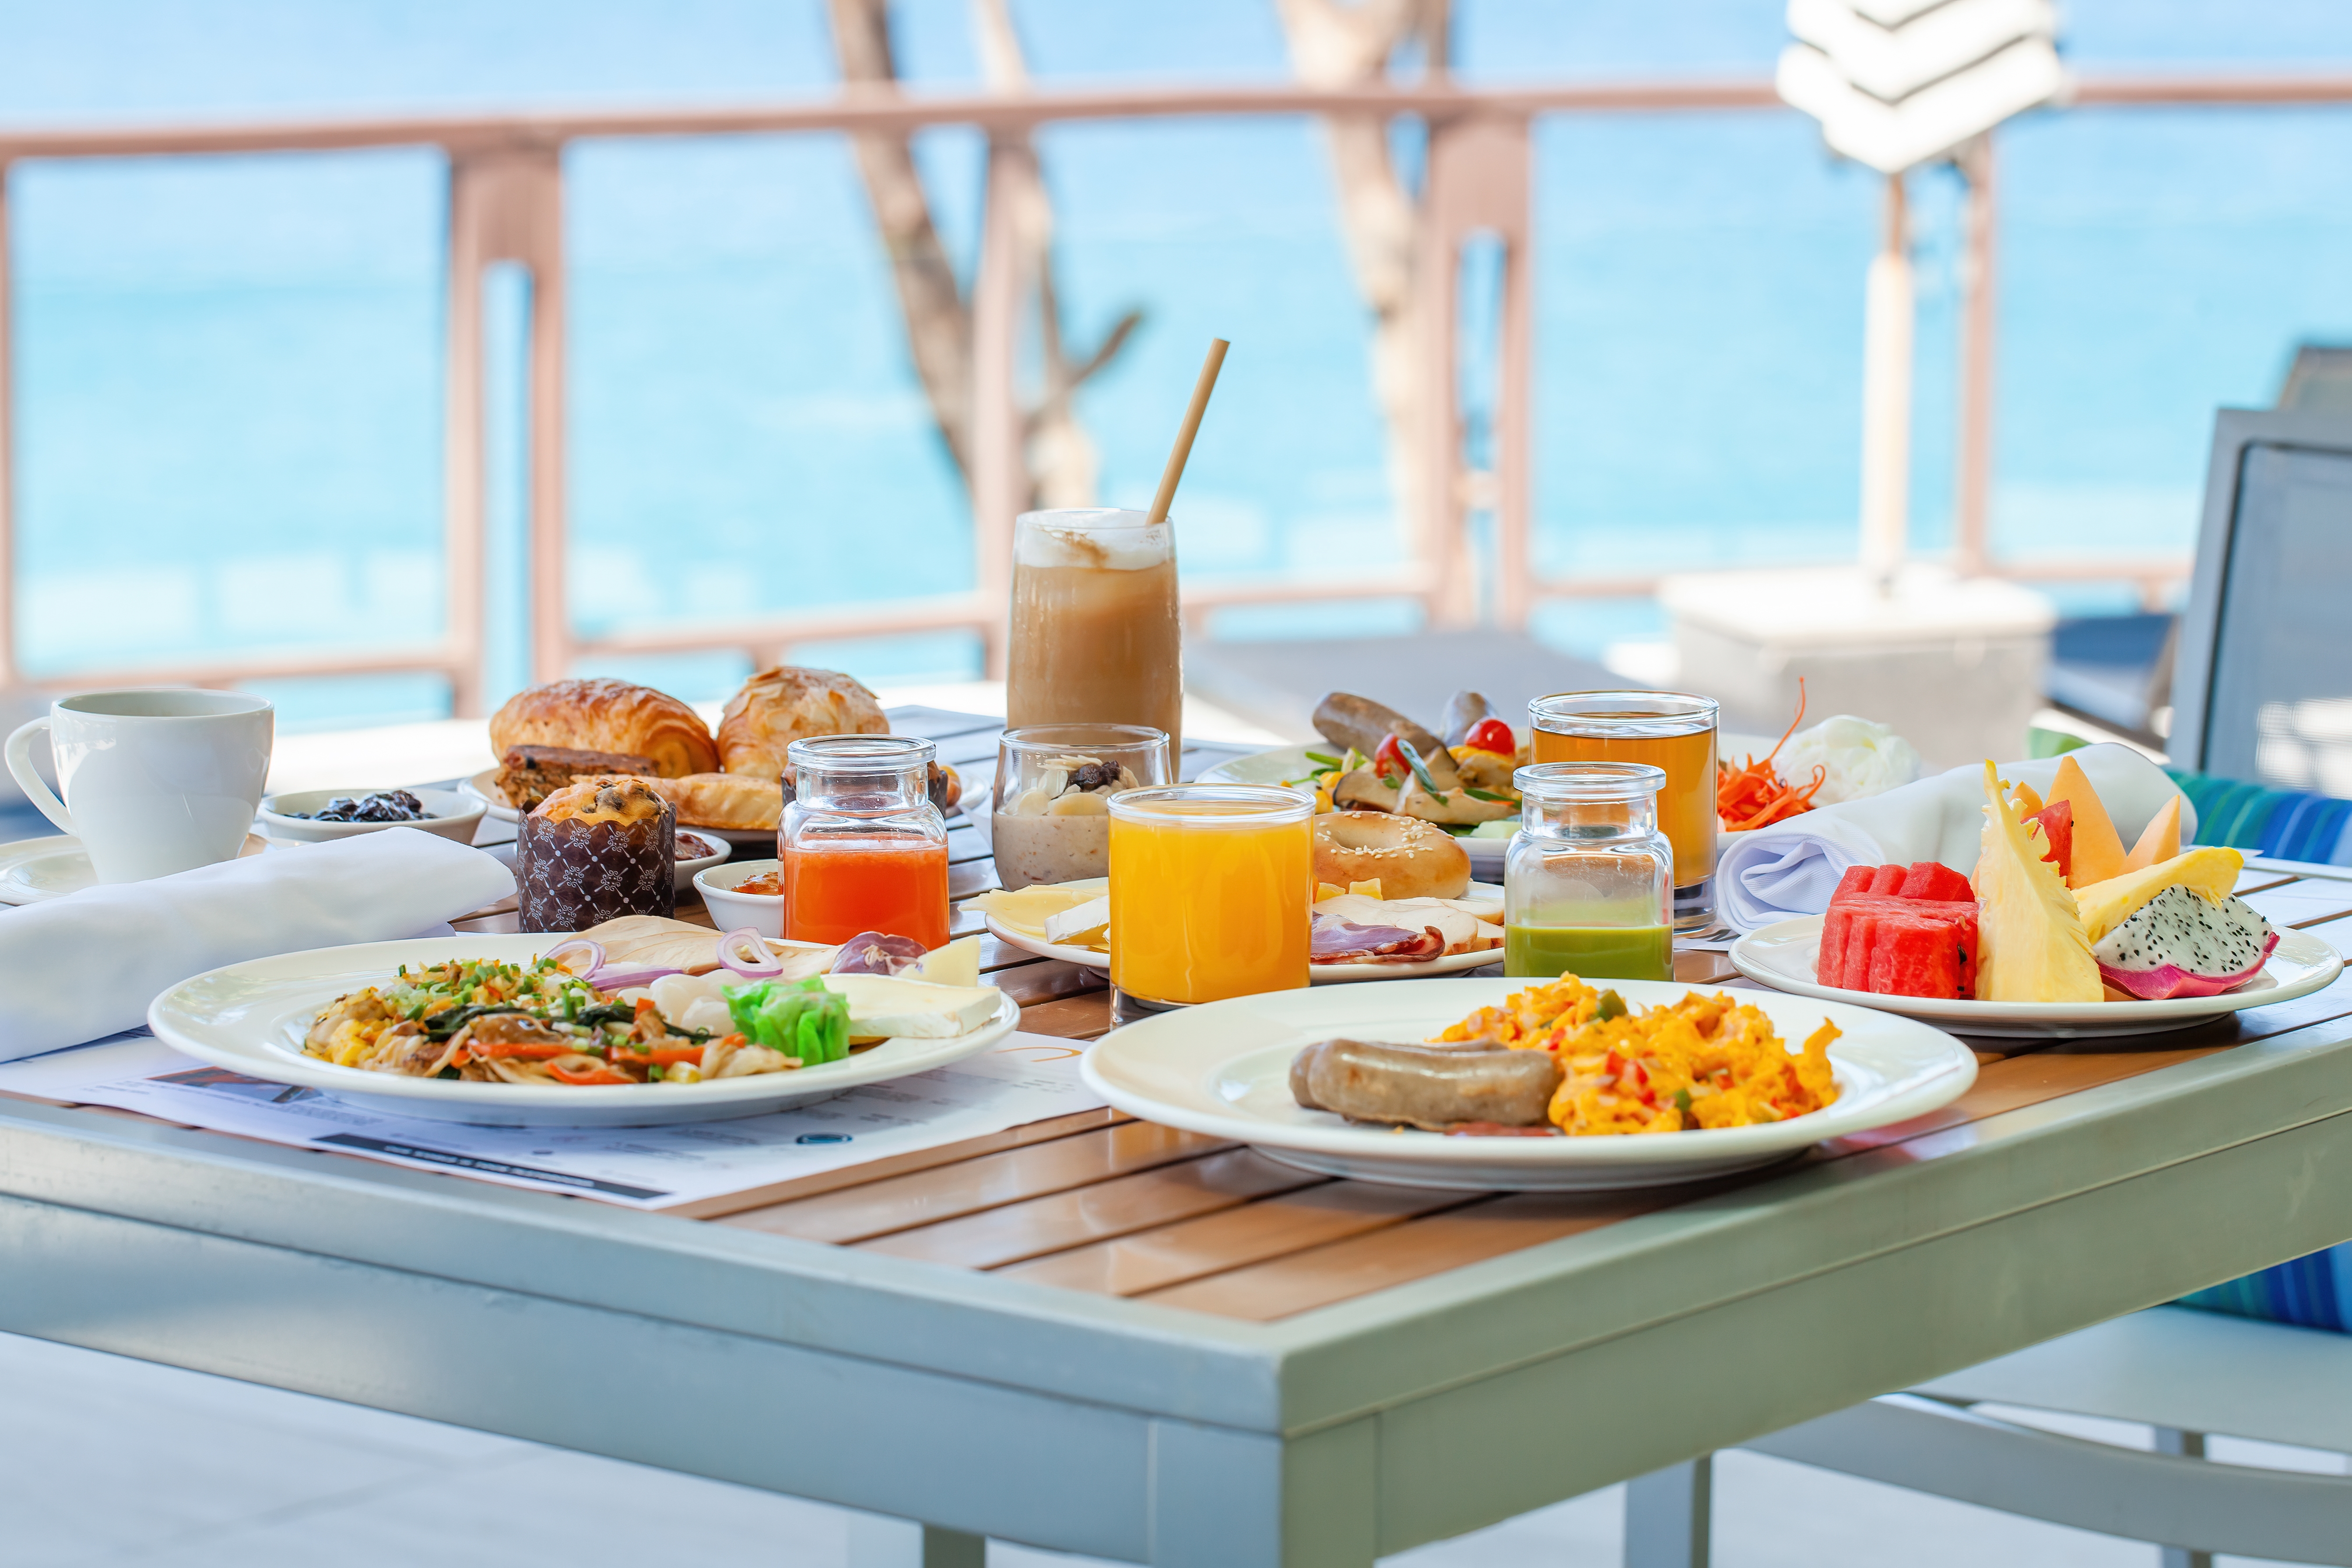 Breakfast by the water | Source: Shutterstock